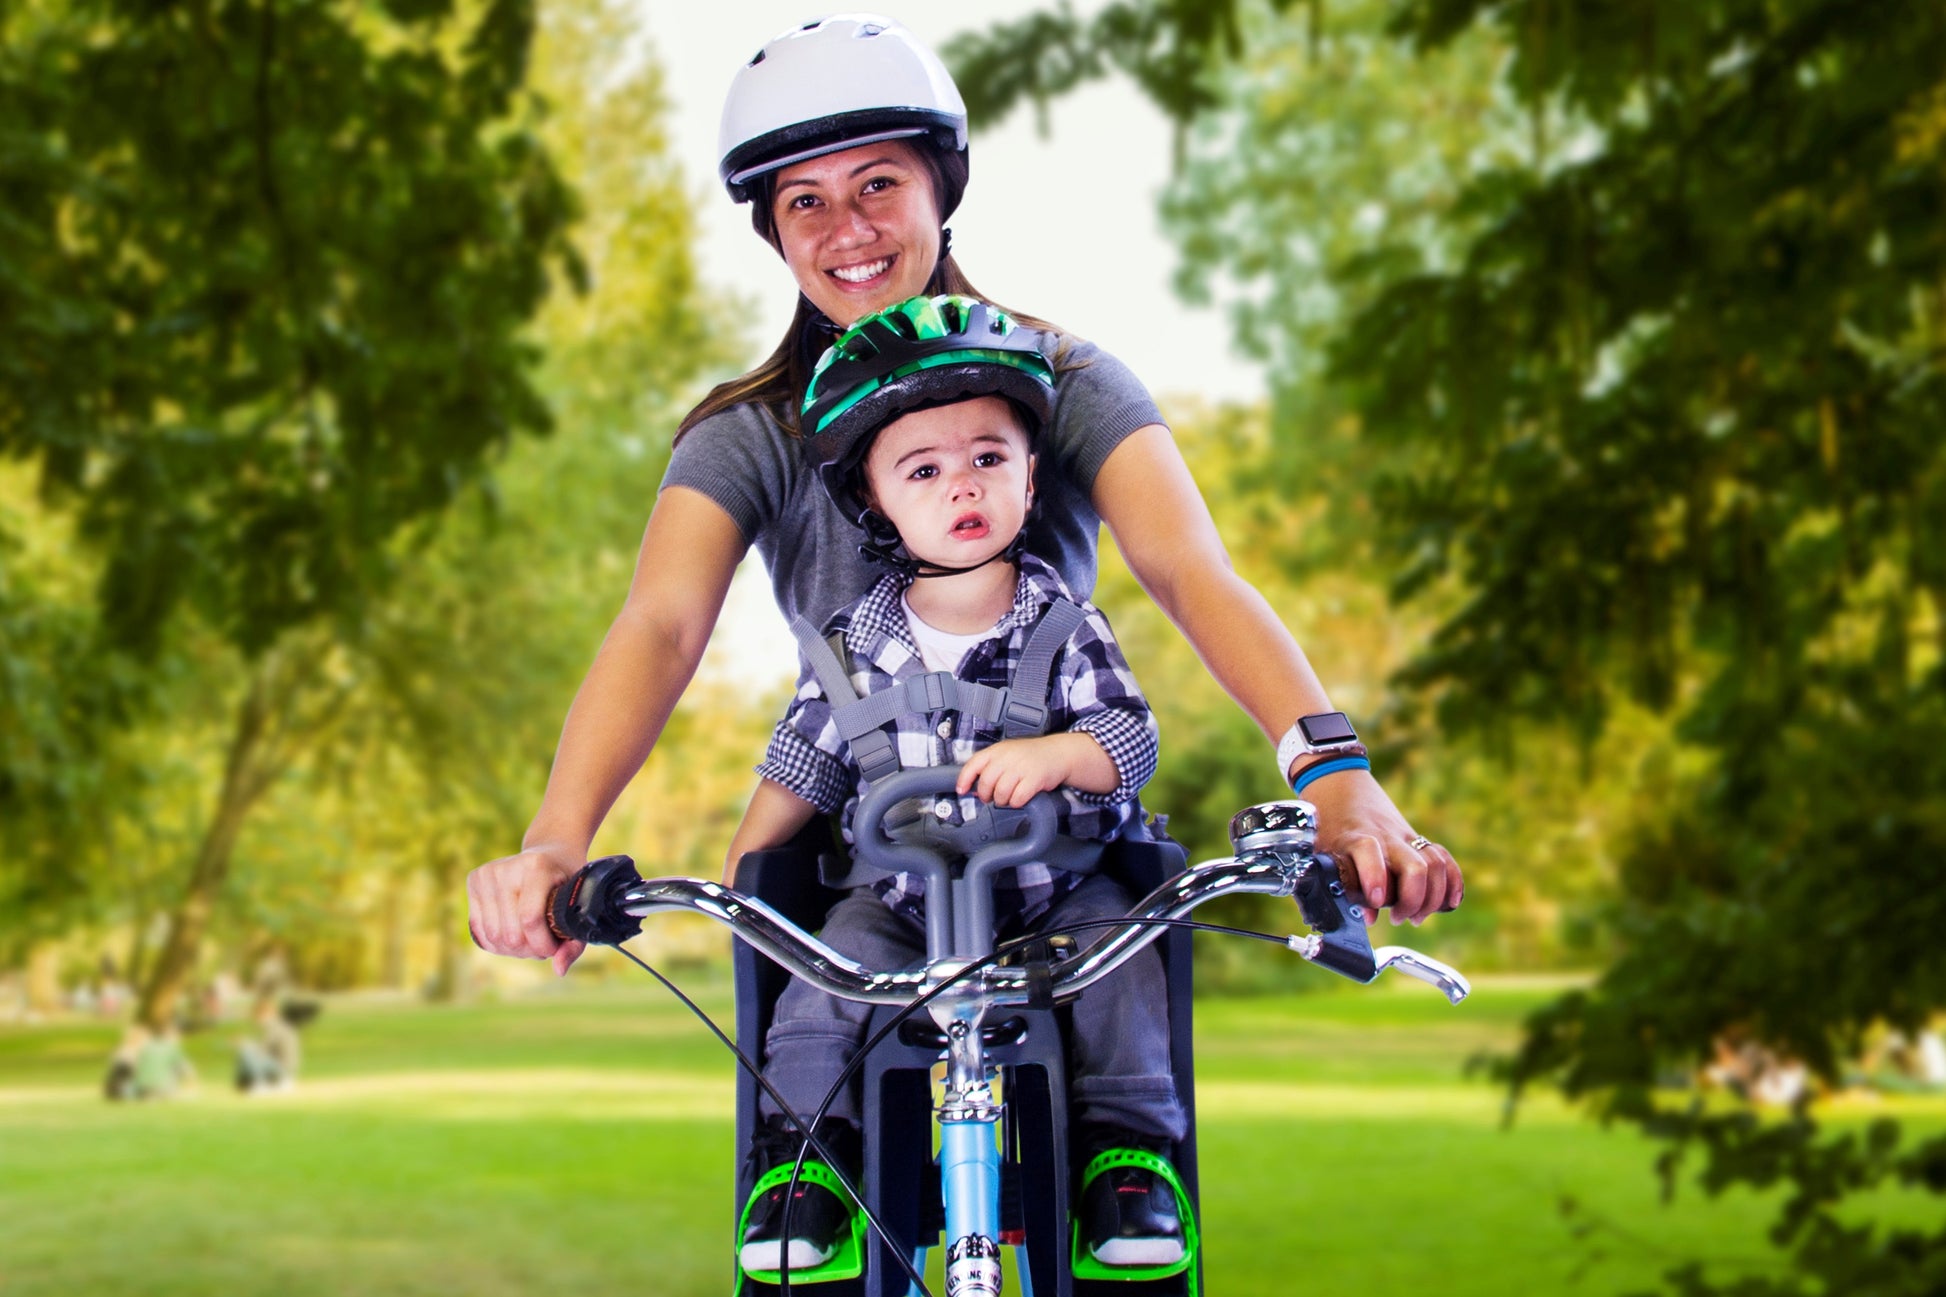 Siège de vélo rembourré pour enfant Everyday Traveler Jr. Pour